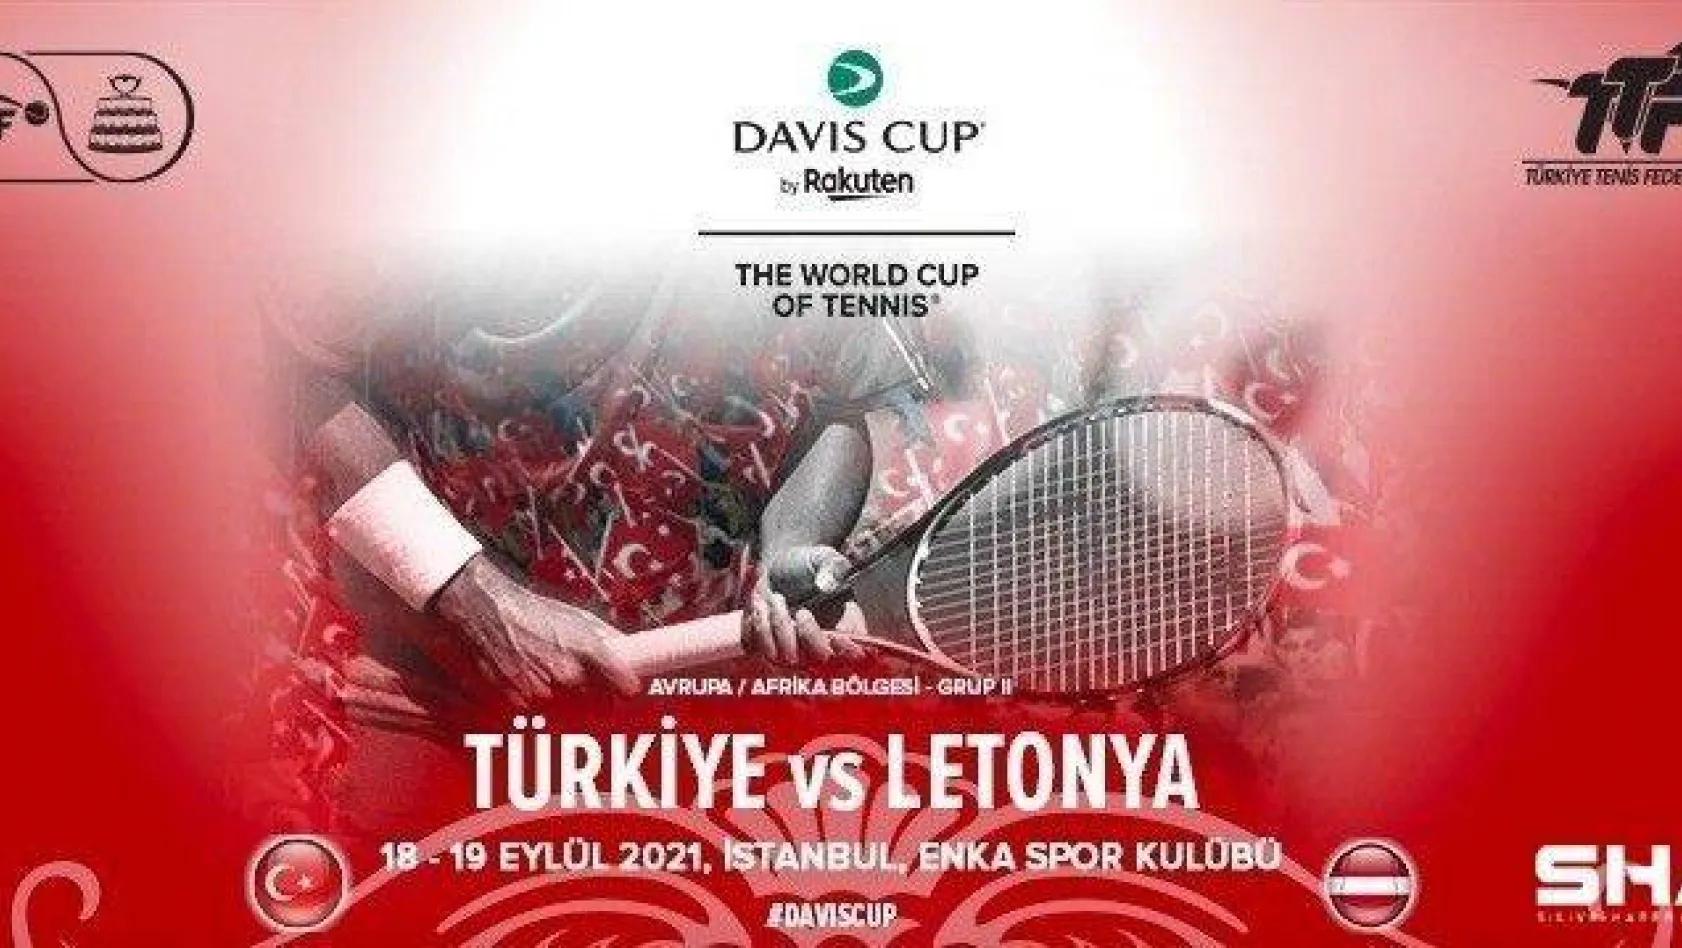 Davis Cup Türkiye - Letonya Dünya Grubu 2 maçının basın toplantısı düzenlendi